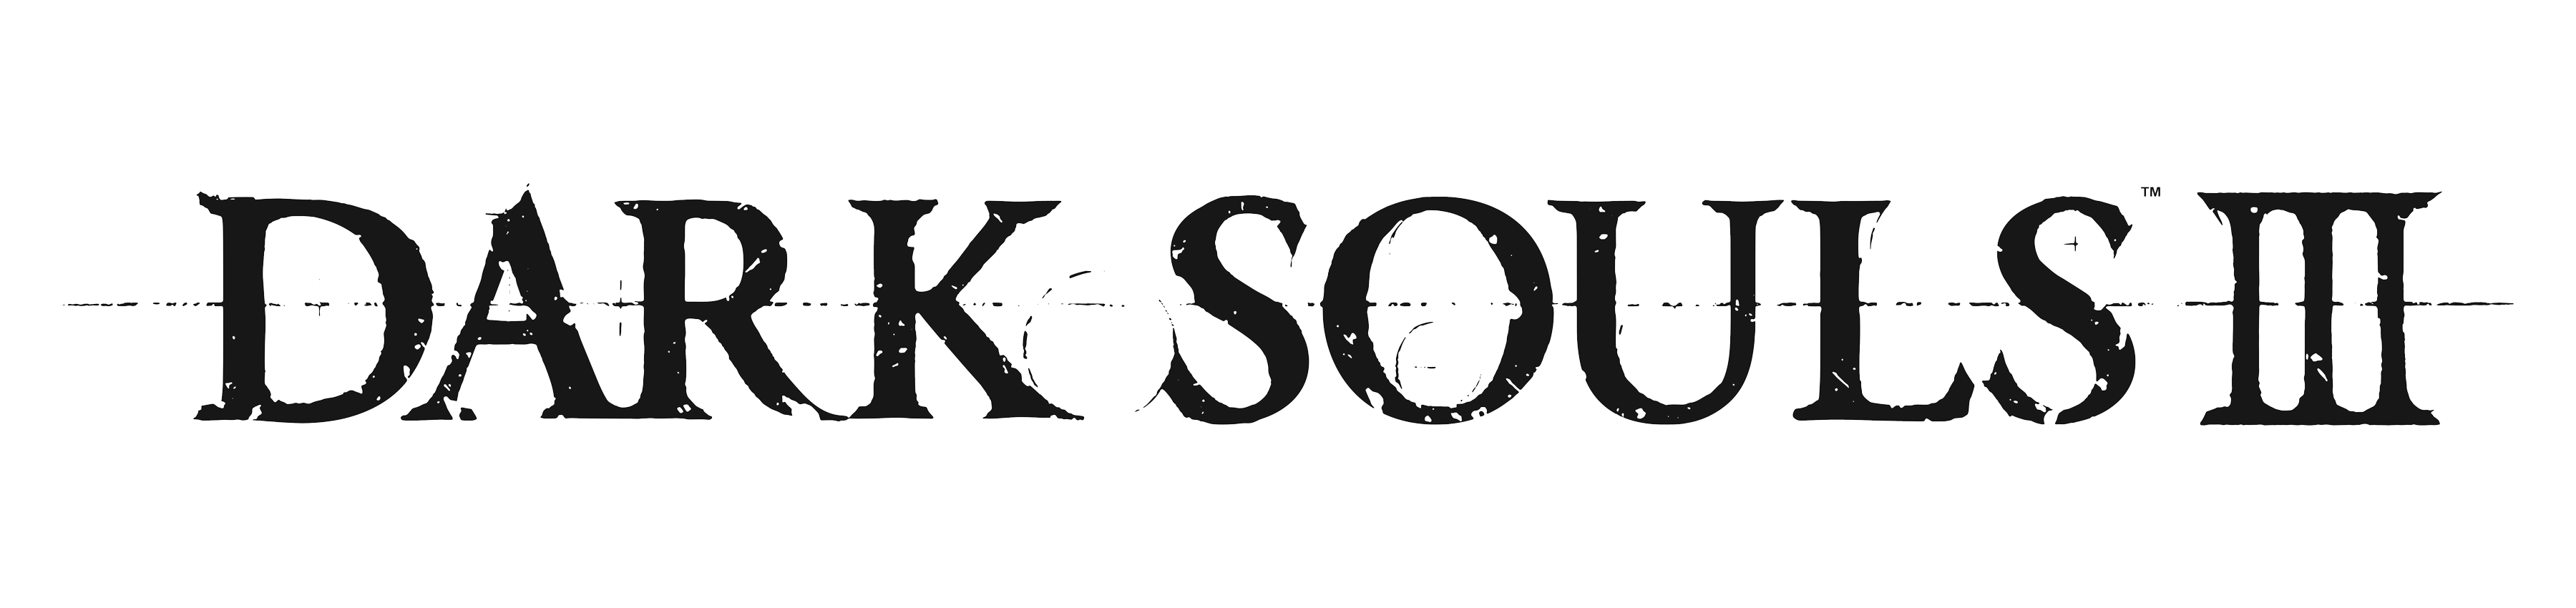 Dark Souls Logo Transparent Background PNG Image